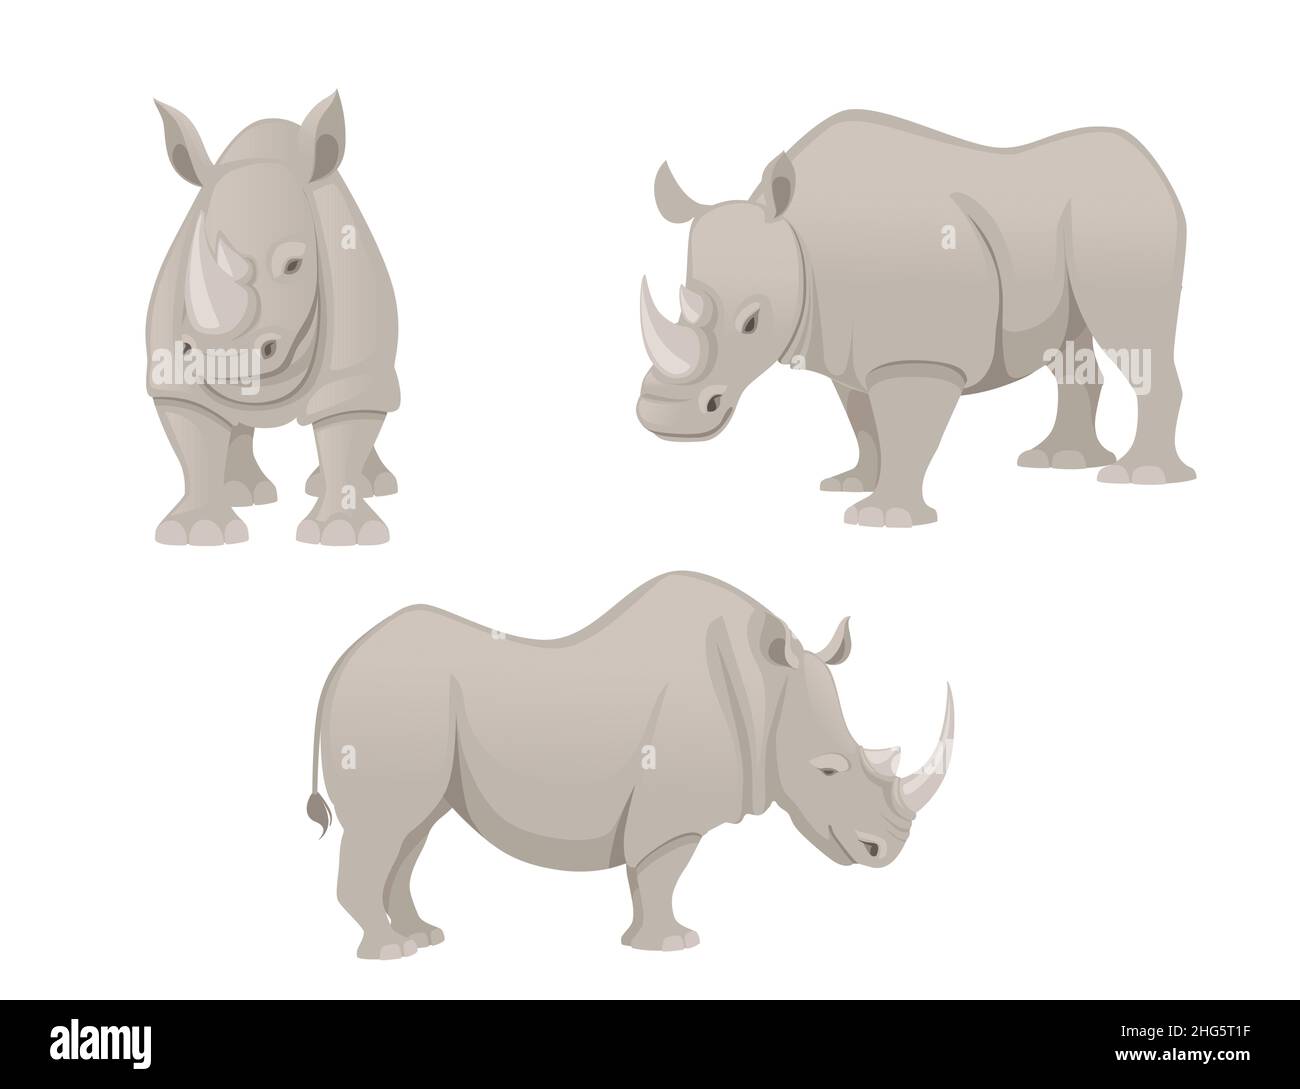 Ensemble de rhinocéros africains vue latérale dessin animé animal dessin vectoriel plat illustration isolée sur fond blanc Illustration de Vecteur